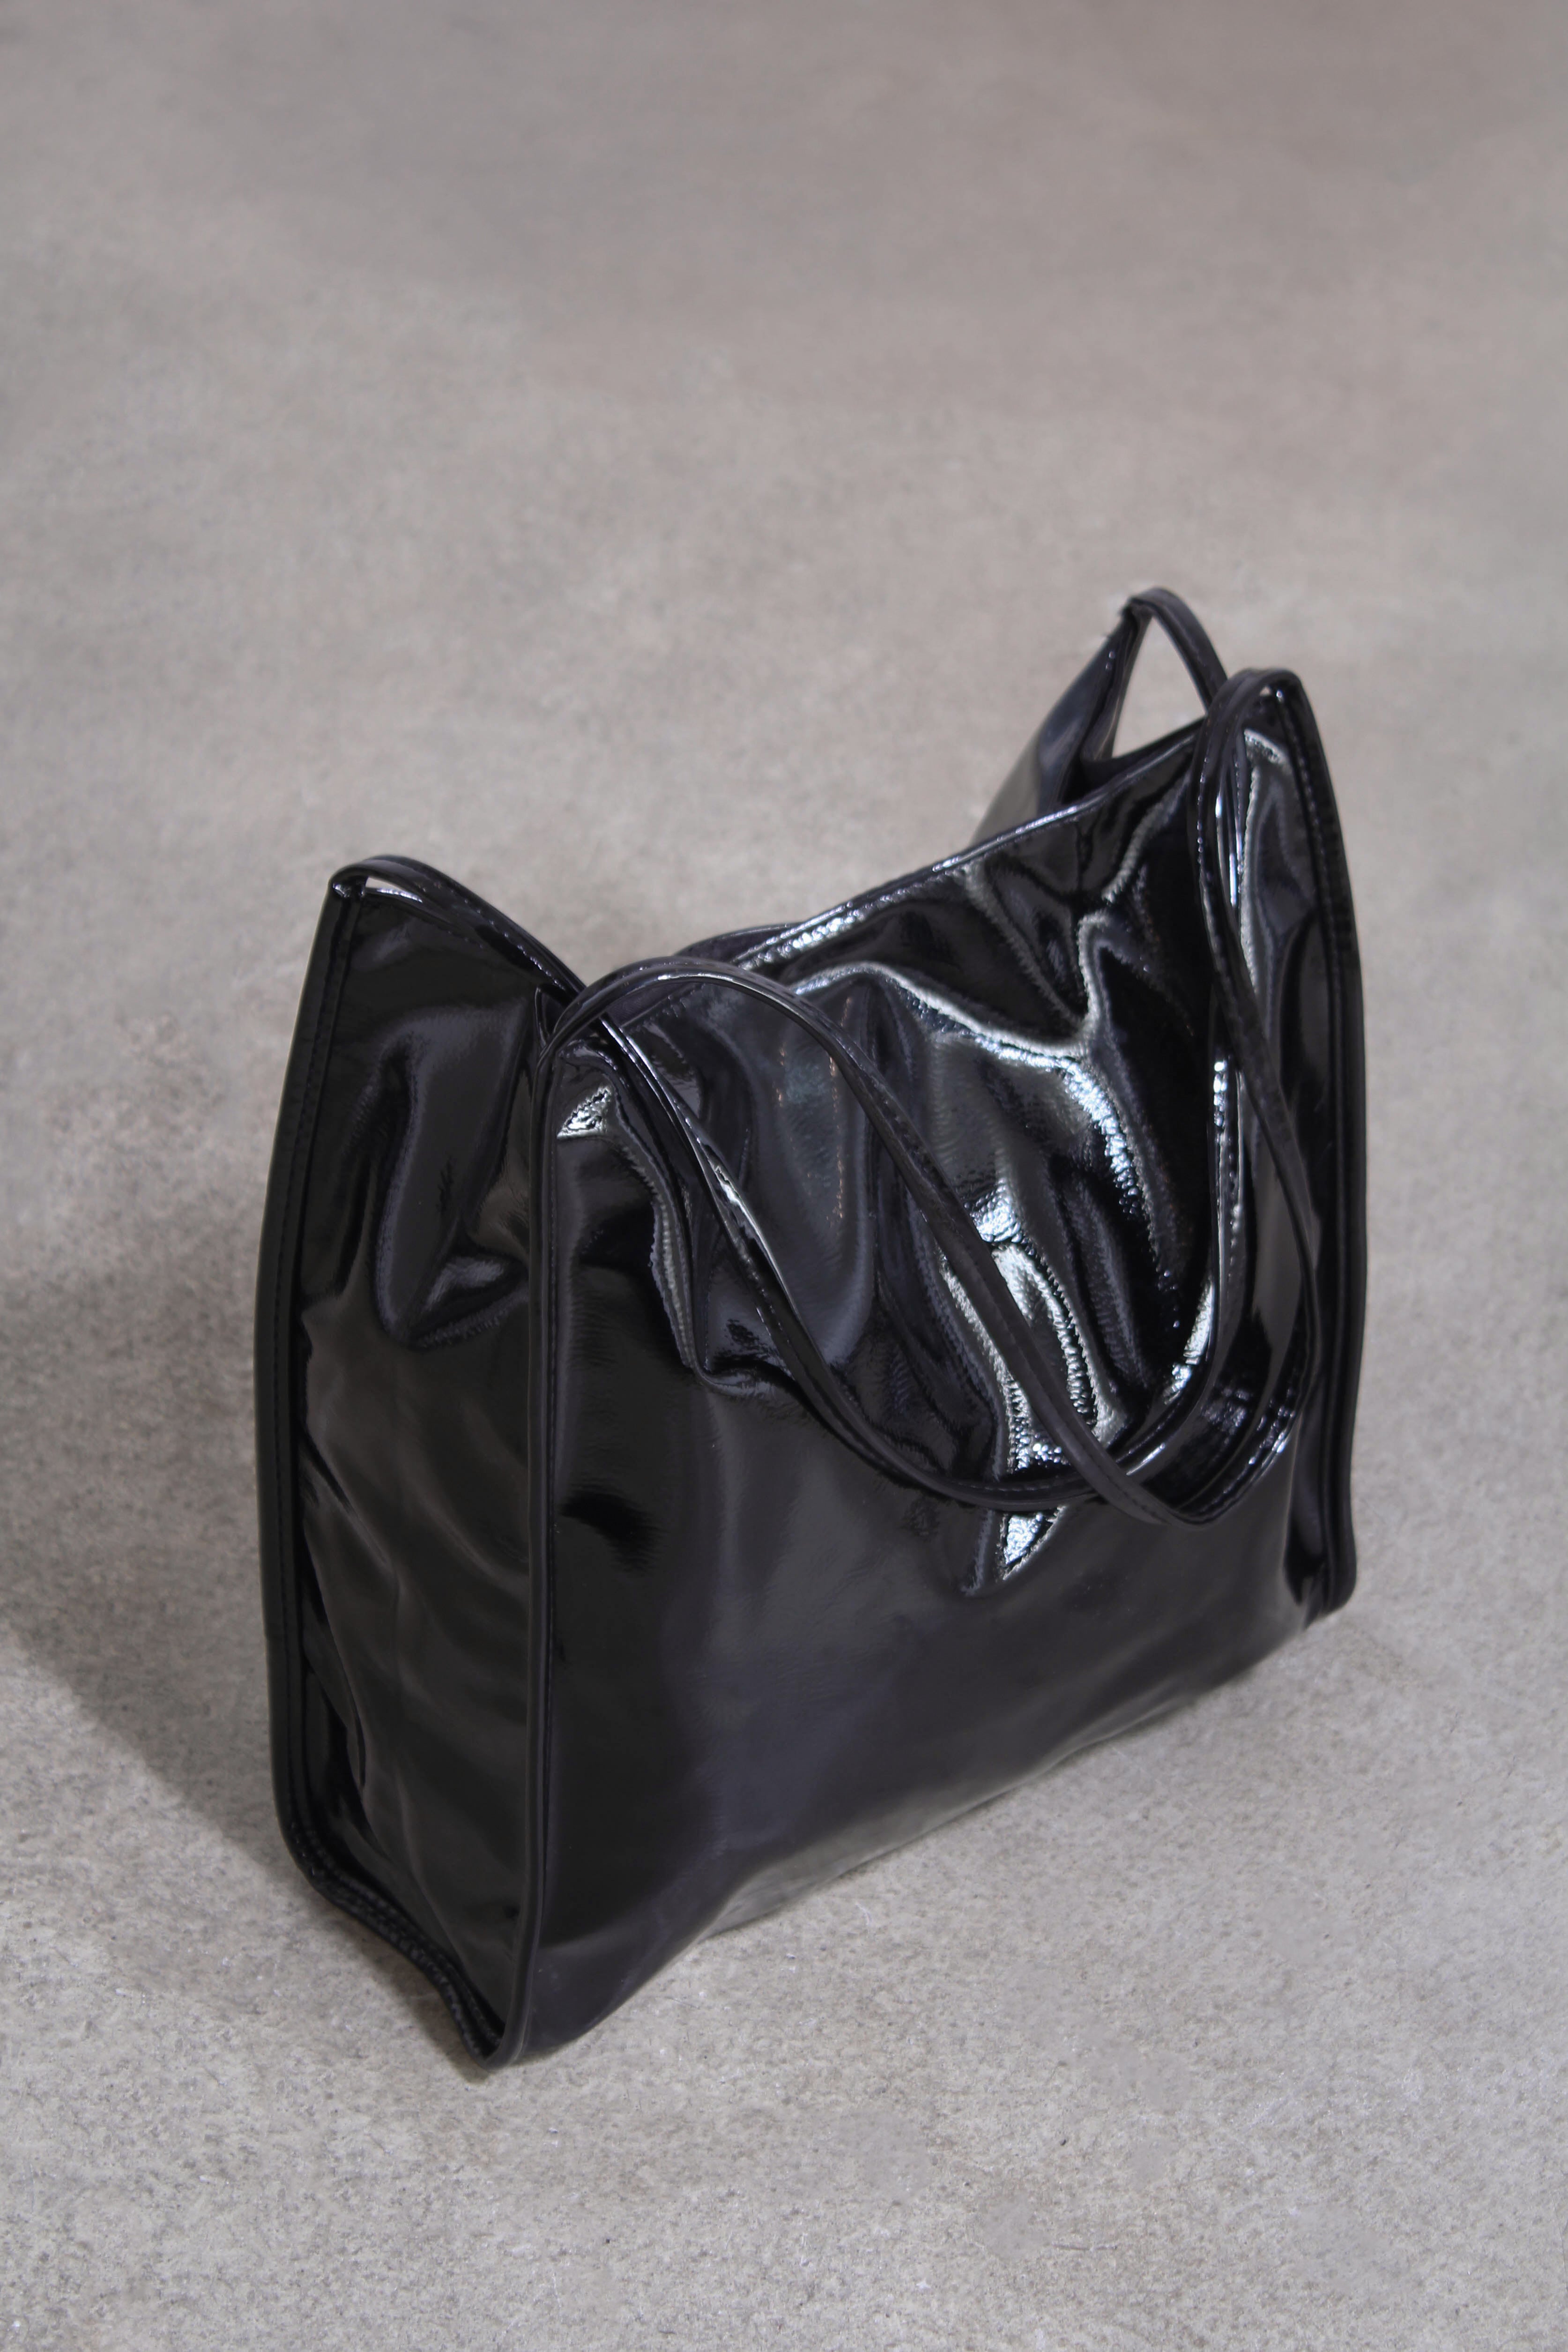 Black high shine PVC tote bag